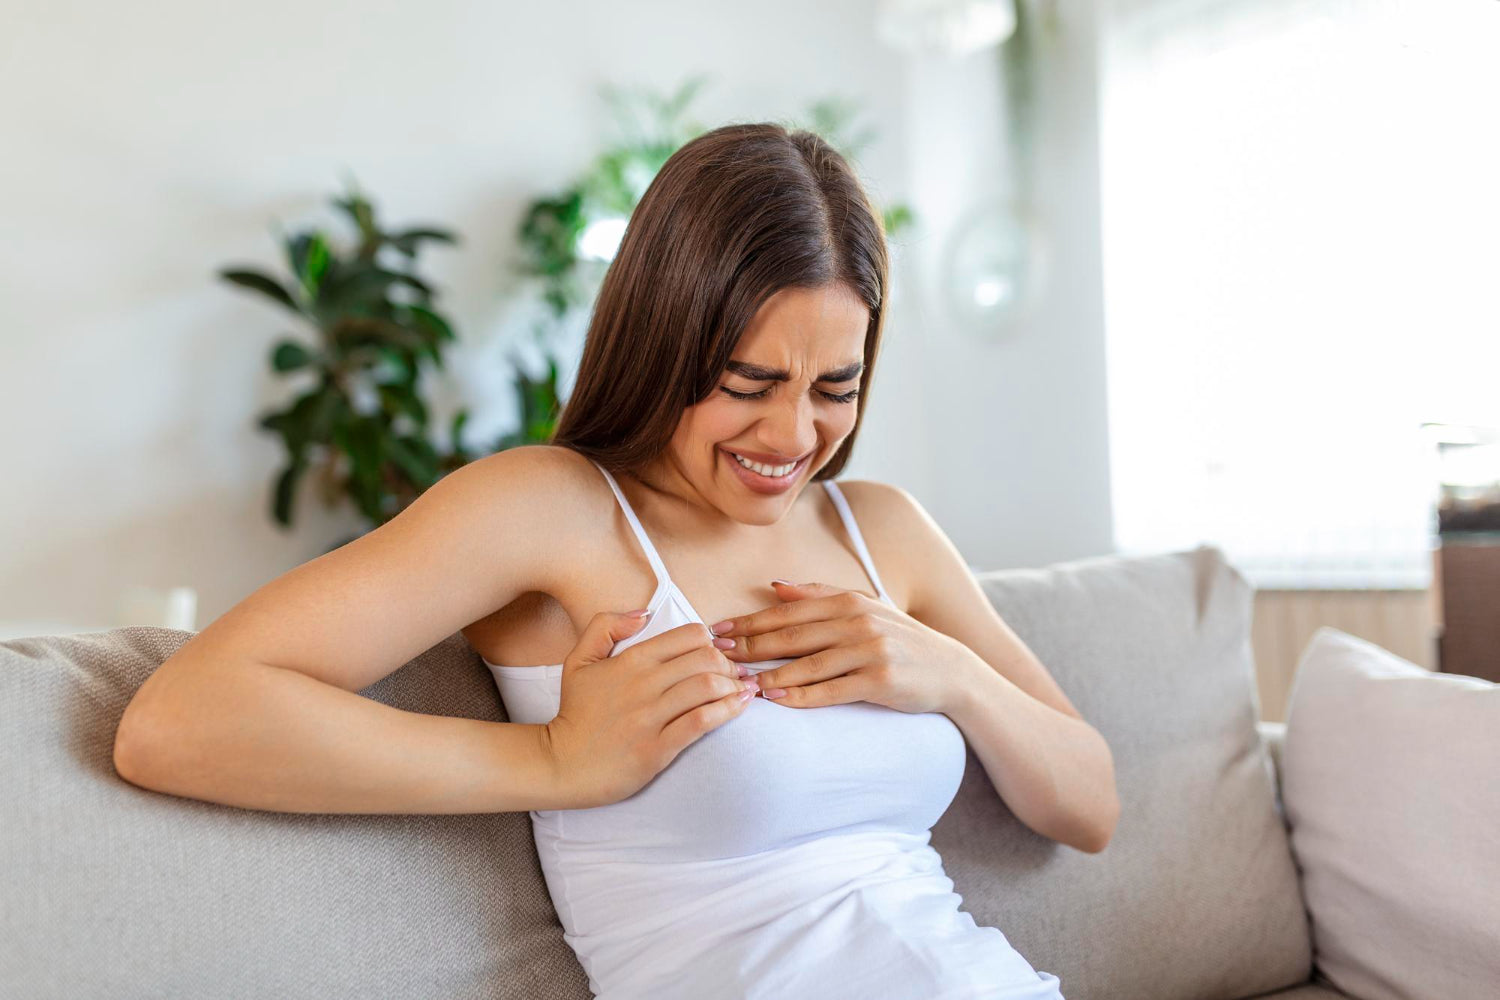 Dolor de pechos 15 días antes de la menstruación: causas y soluciones